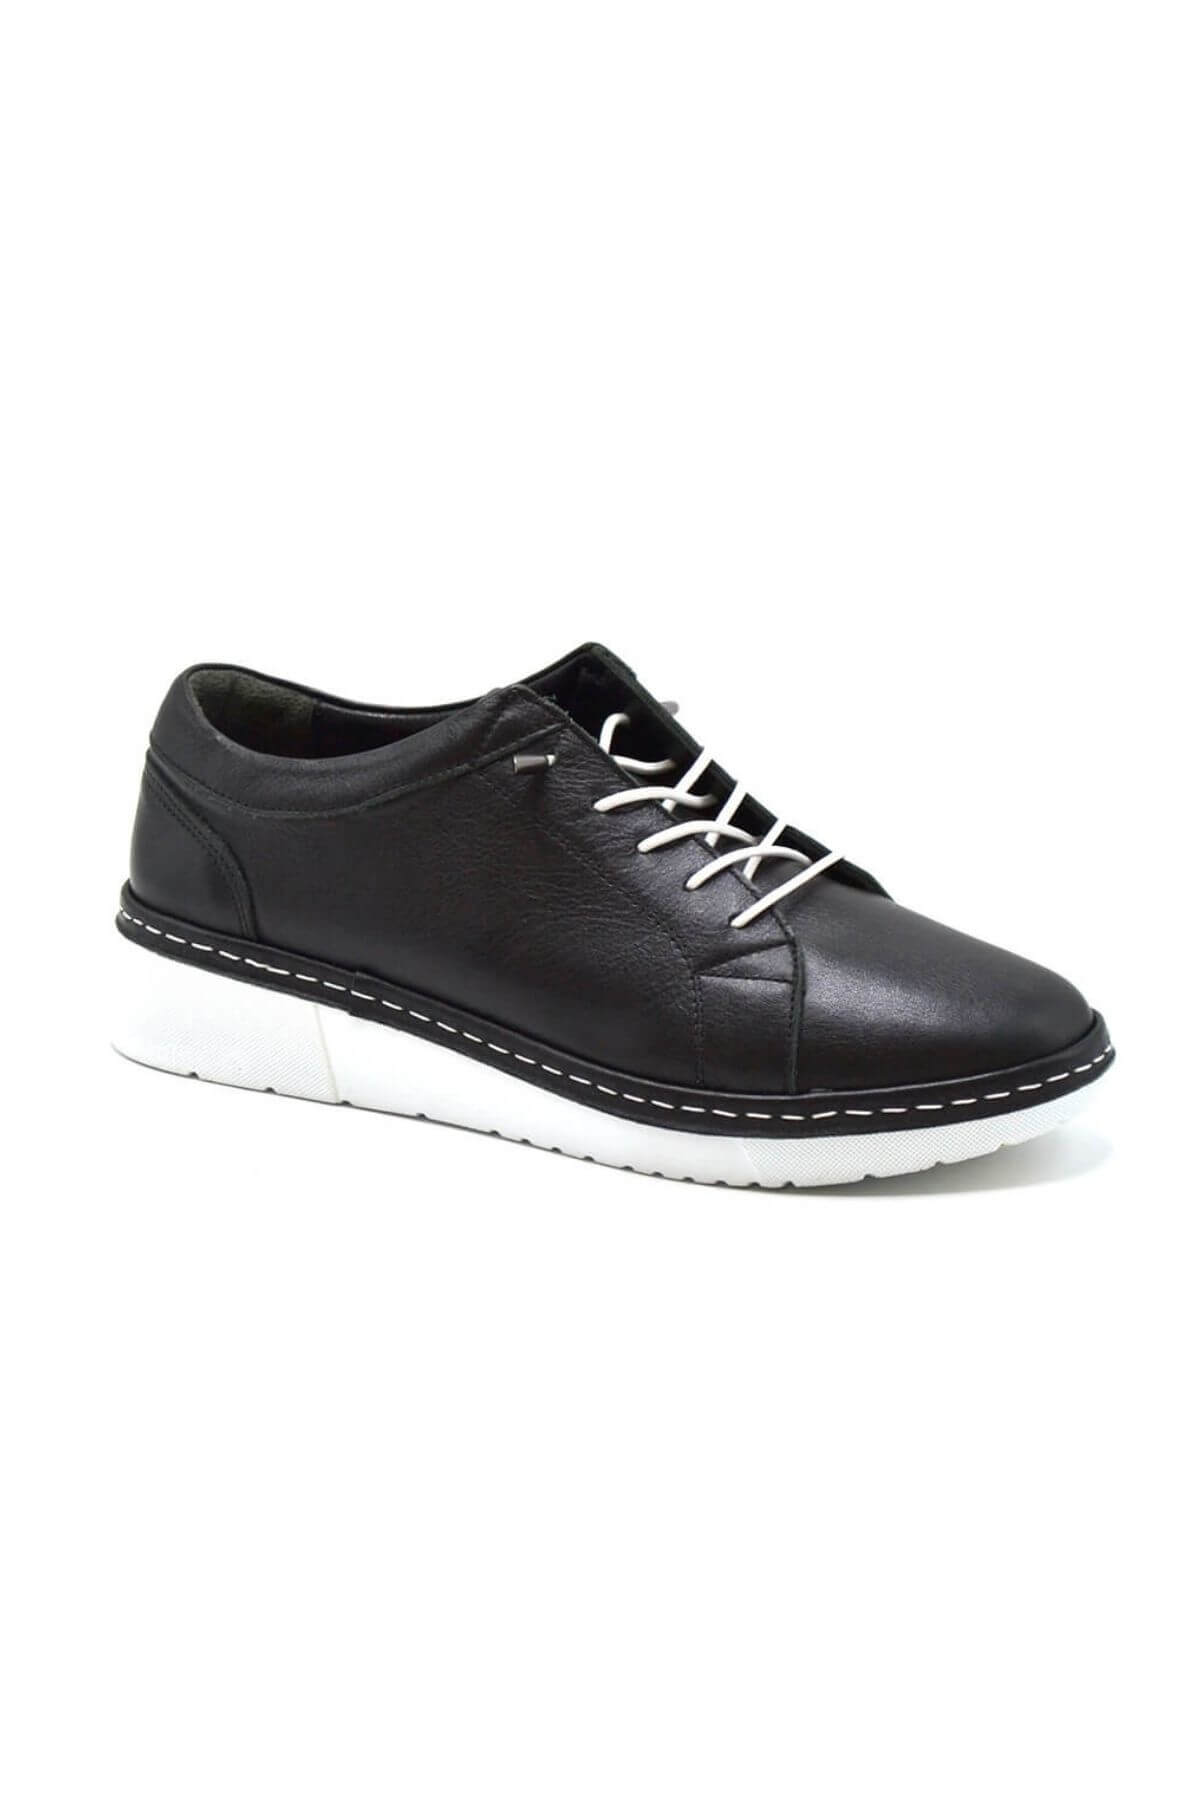 Kadın Comfort Deri Ayakkabı Siyah 23150003Y